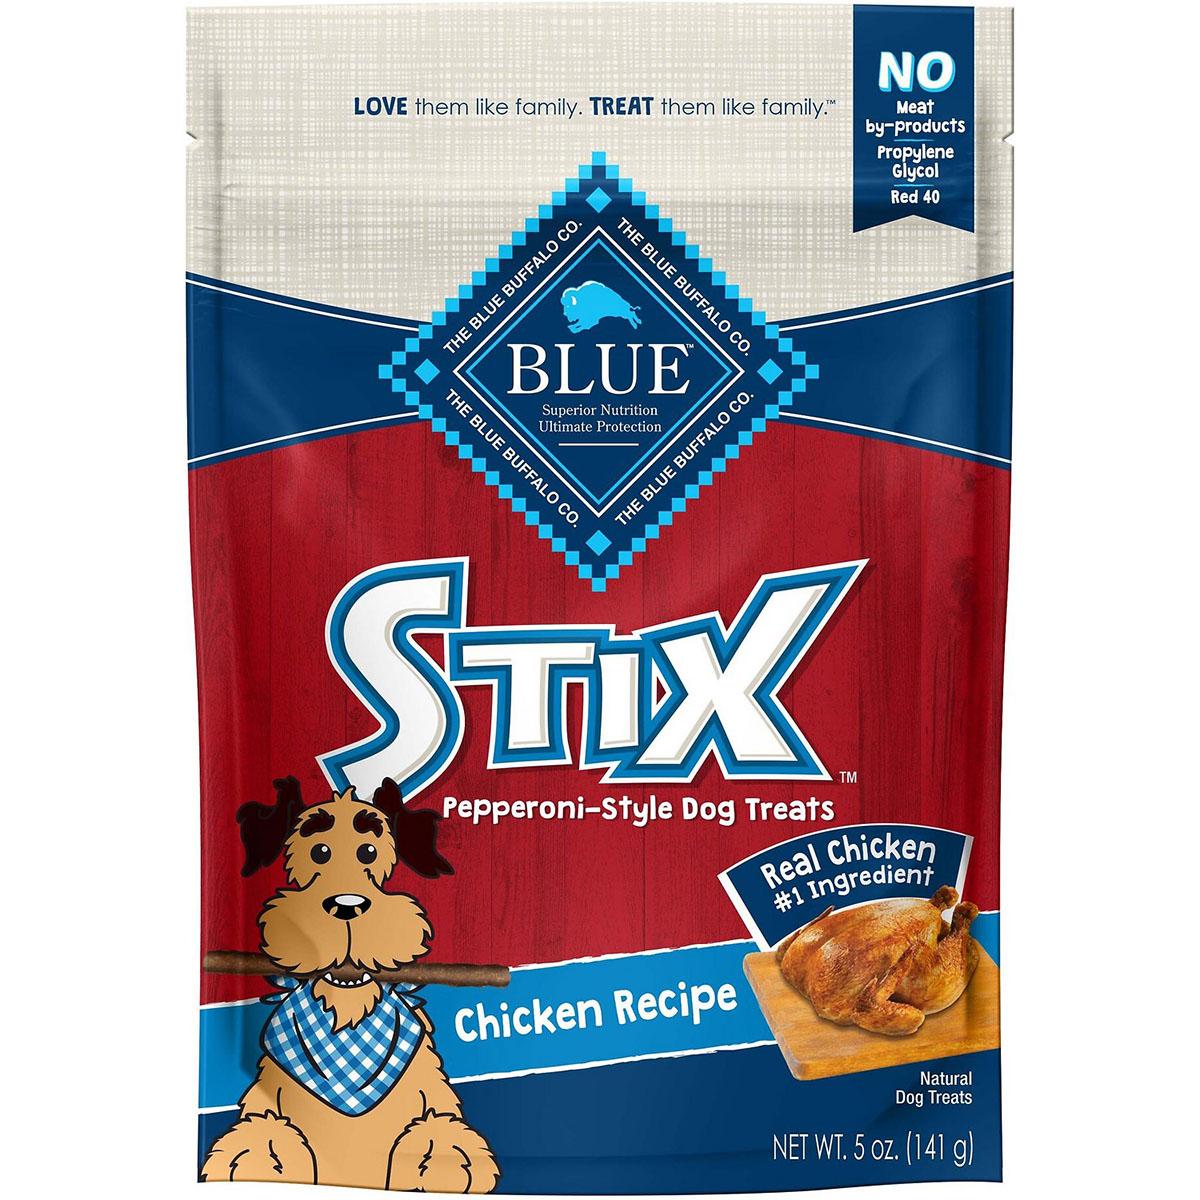 Blue Buffalo Stix Chicken Recipe Pepperoni-Style Dog Treats